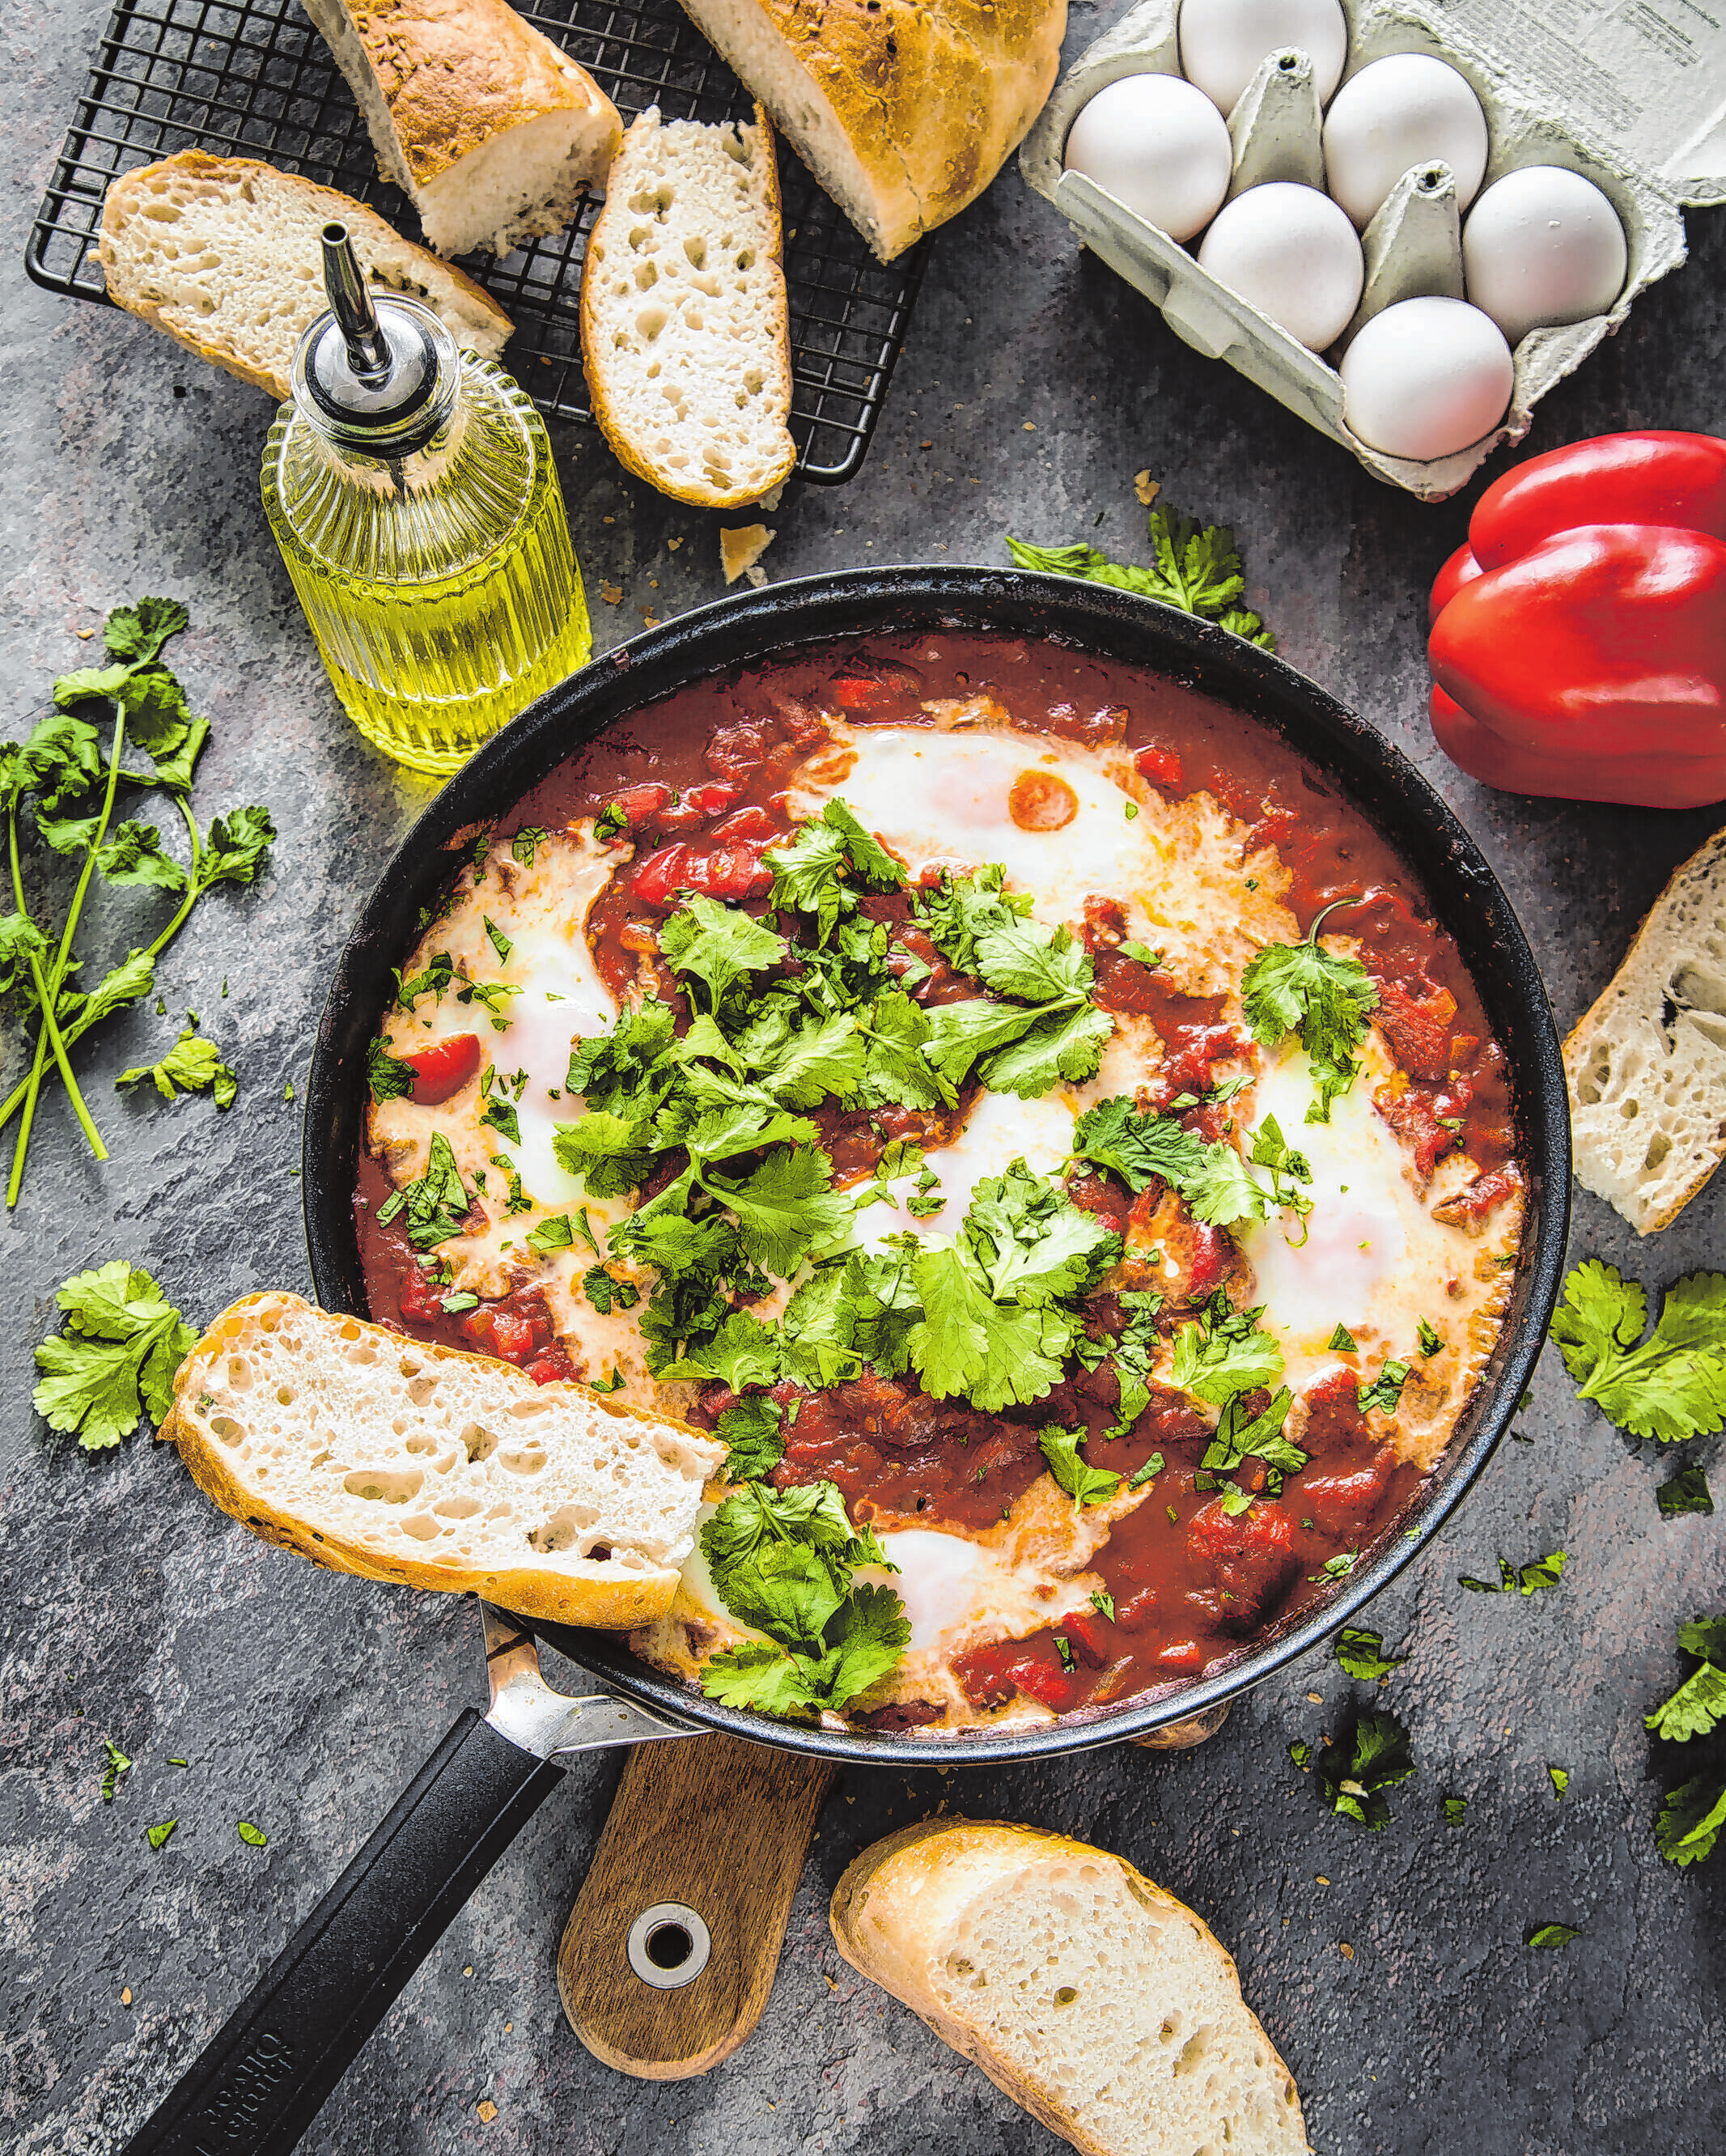 Von der internationalen Küche inspiriert: Shakshuka wird aus pochierten Eiern und einer Sauce aus Tomaten, Chilischoten und Zwiebeln zubereitet. Für Veganer kann man die Eier auch weglassen.